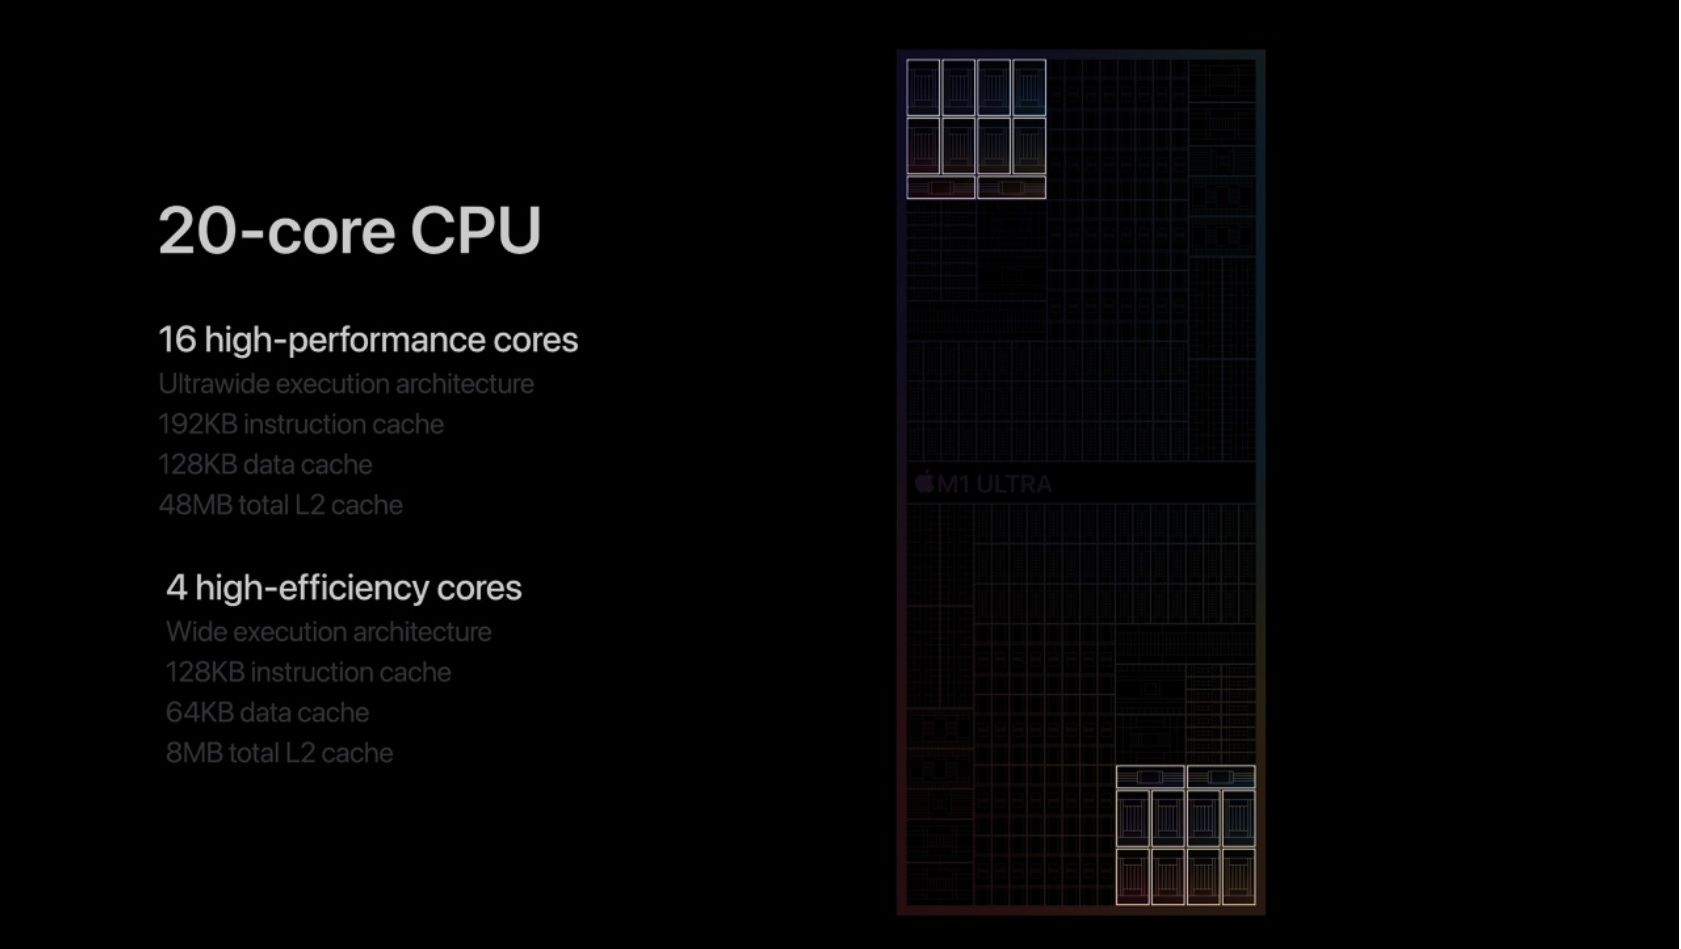 Apple M1 Ultra CPU